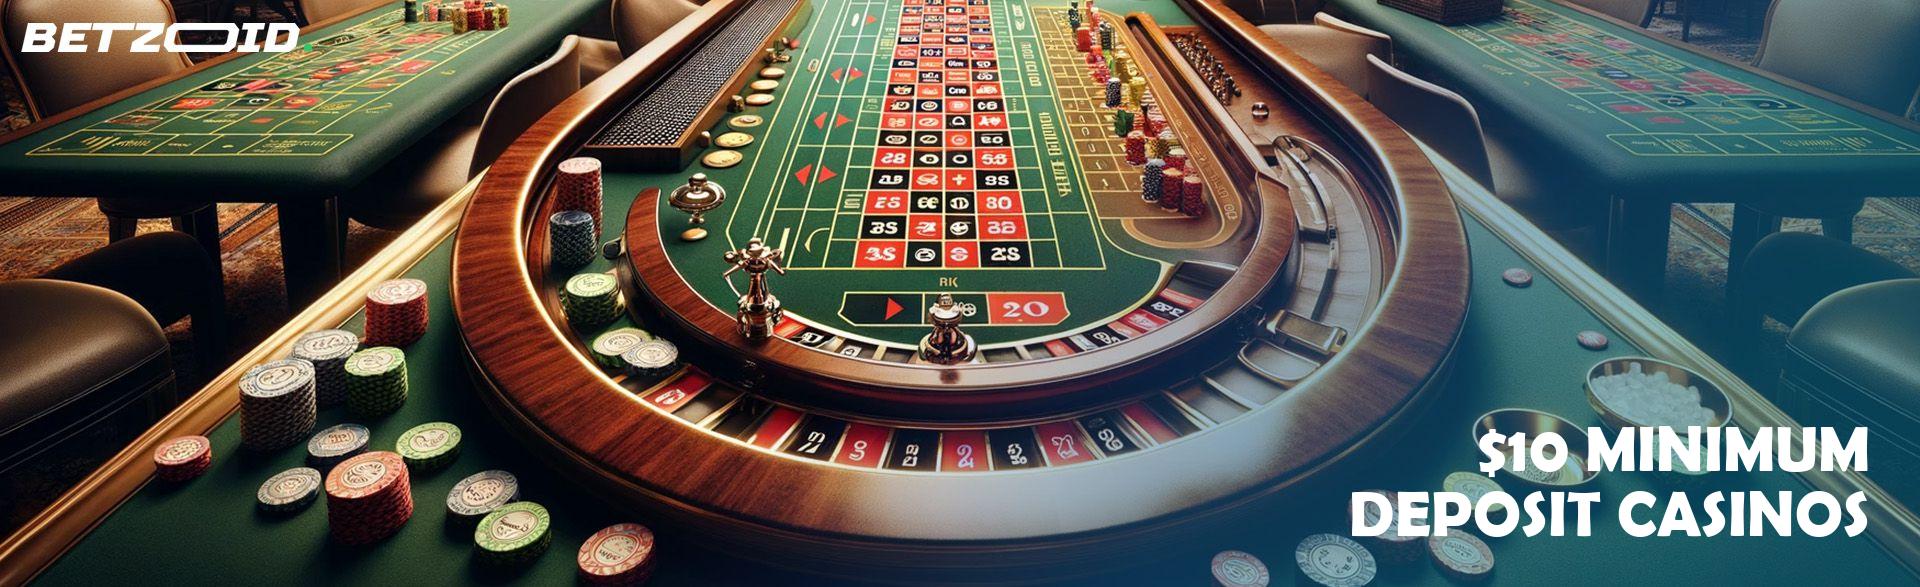 $10 Minimum Deposit Casinos.